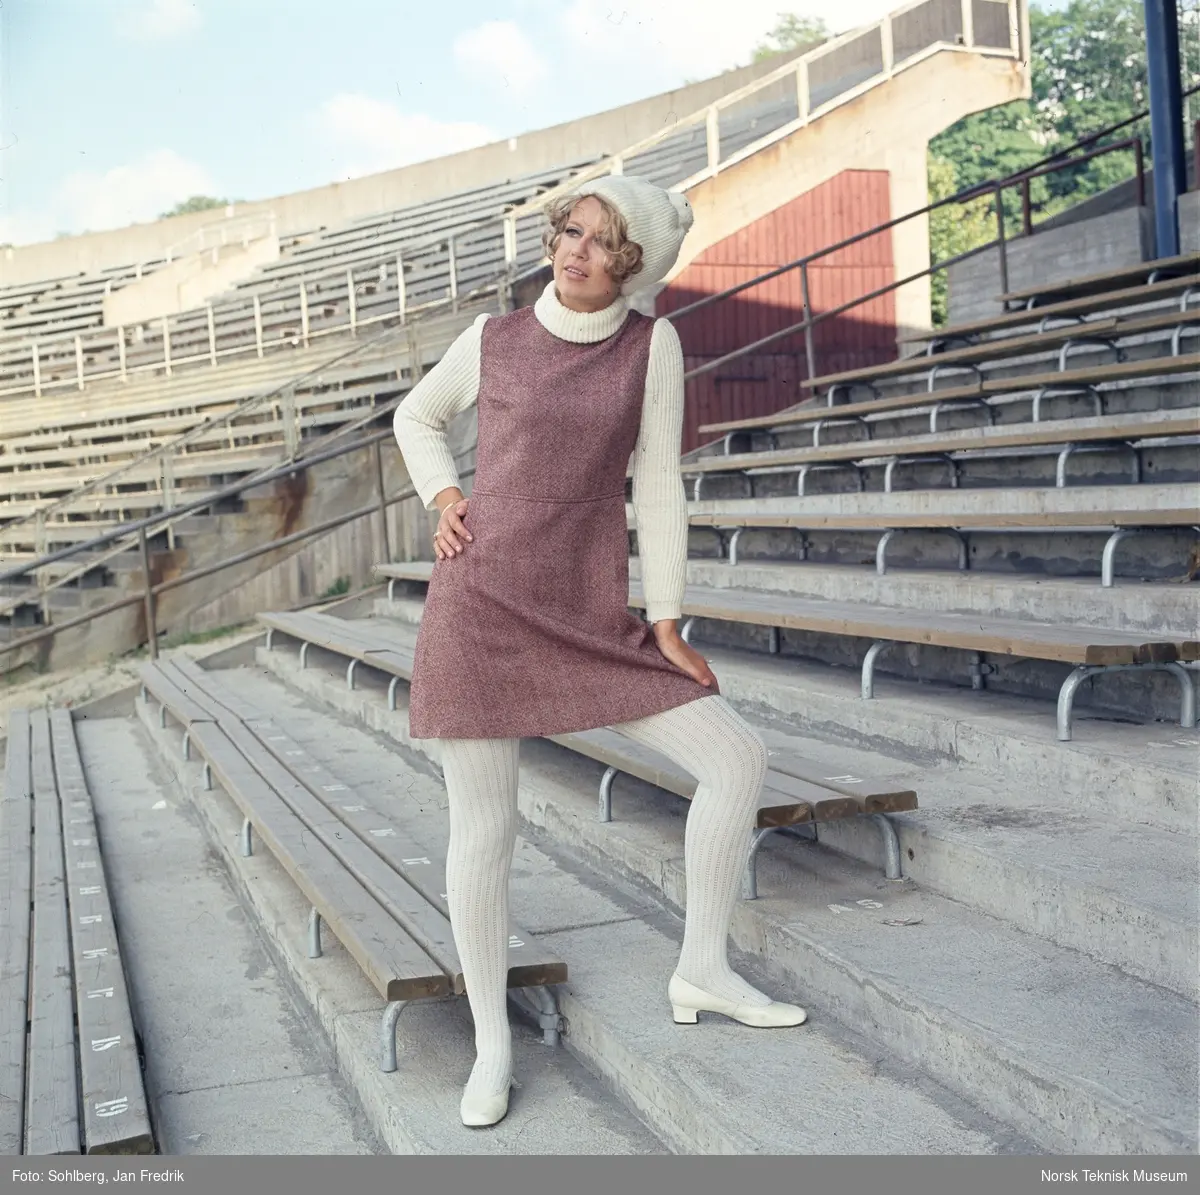 Motebilde, kvinne i lilla ullkjole med hvit genser, sko, strømper og alpelue, på tribunen på idrettsarena. Bildet er en del av en serie der noen er publisert i ukebladet Det Nye 1969, nr. 38.